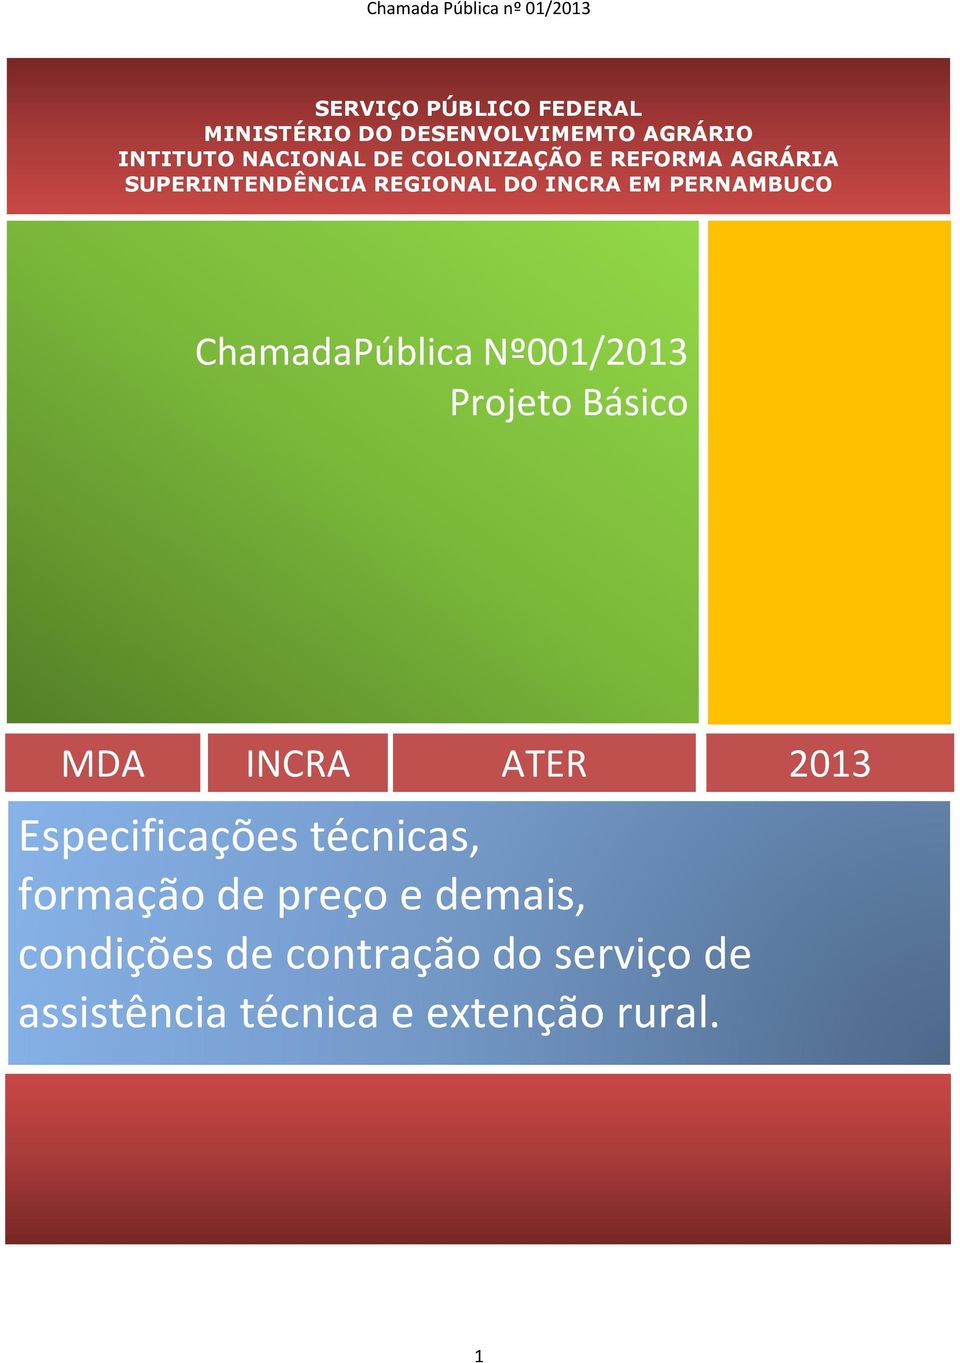 ChamadaPública Nº001/201301/2013 Projeto Basico Básico MDA INCRA ATER 2013 Especificações